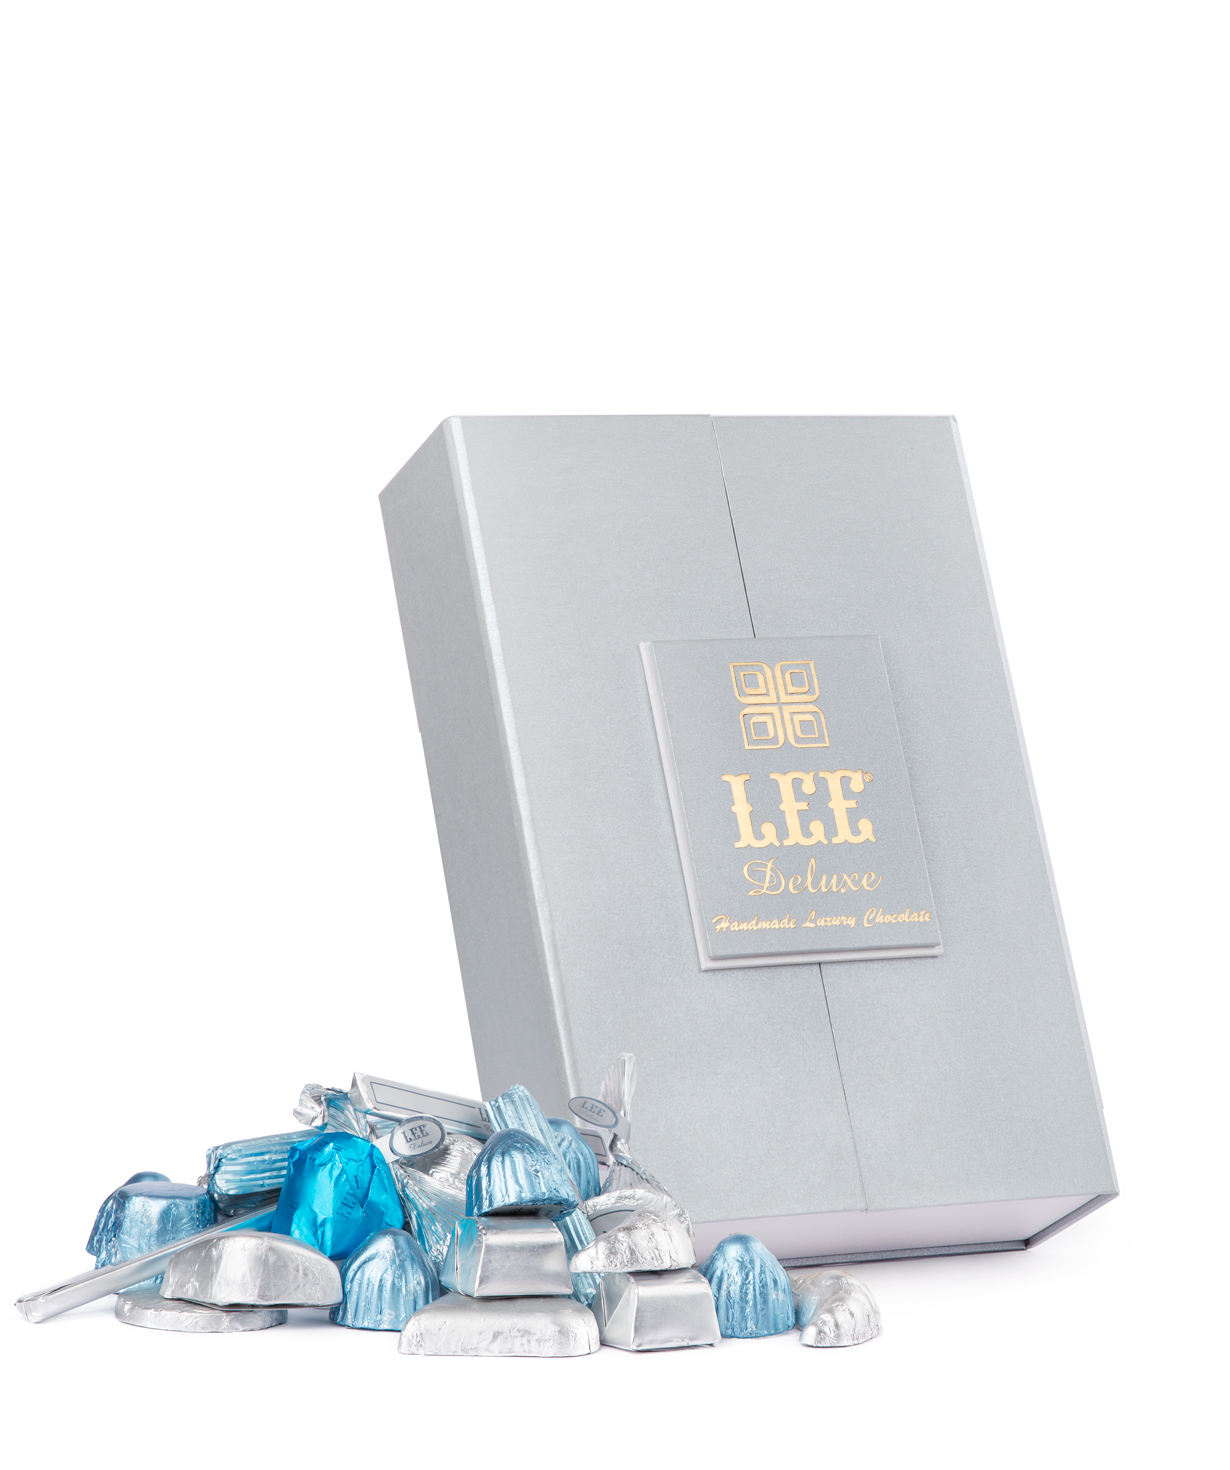 Հավաքածու «Lee Deluxe» ստվարաթղթե տուփով, փոքր